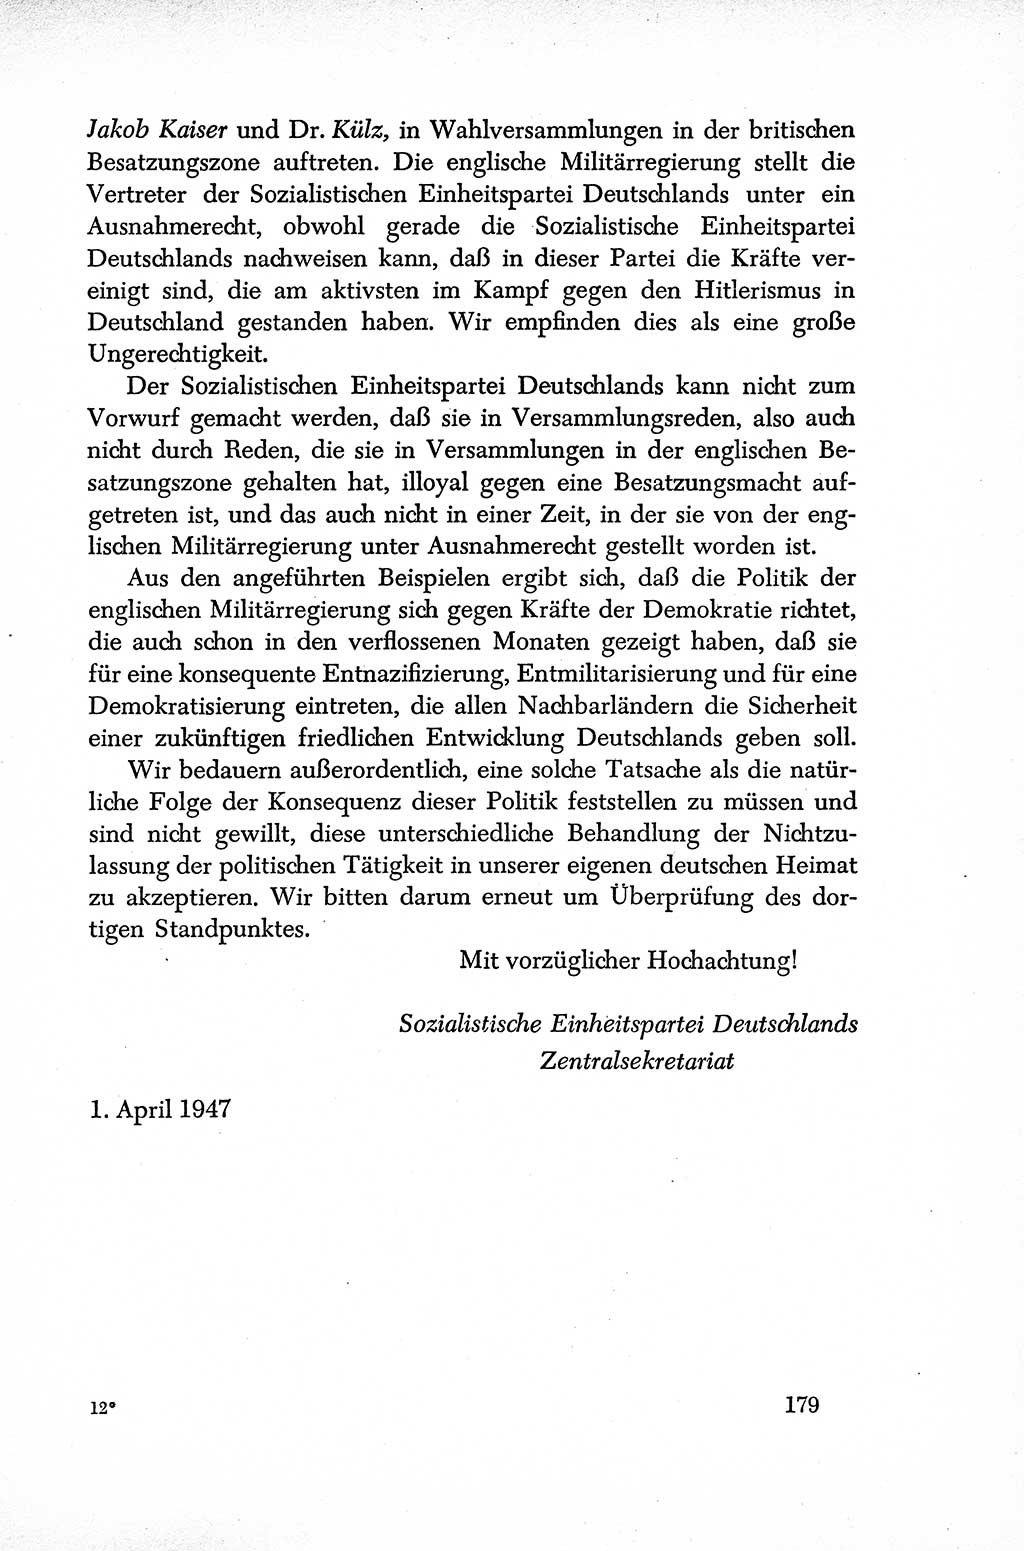 Dokumente der Sozialistischen Einheitspartei Deutschlands (SED) [Sowjetische Besatzungszone (SBZ) Deutschlands] 1946-1948, Seite 179 (Dok. SED SBZ Dtl. 1946-1948, S. 179)